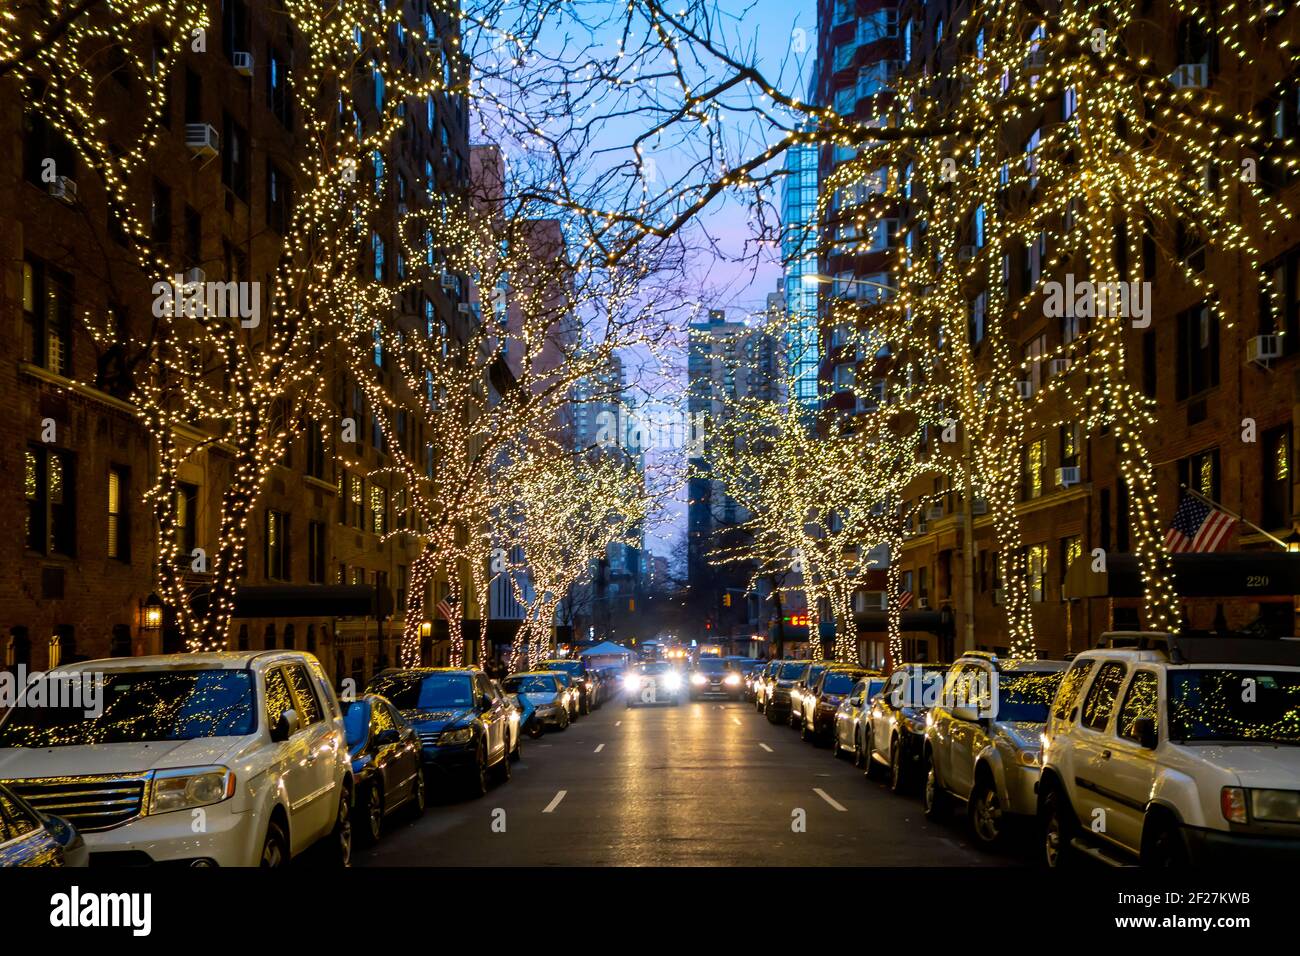 New York Street Night avec guirlande de Noël illuminée sur les arbres avec parking latéral et circulation Banque D'Images